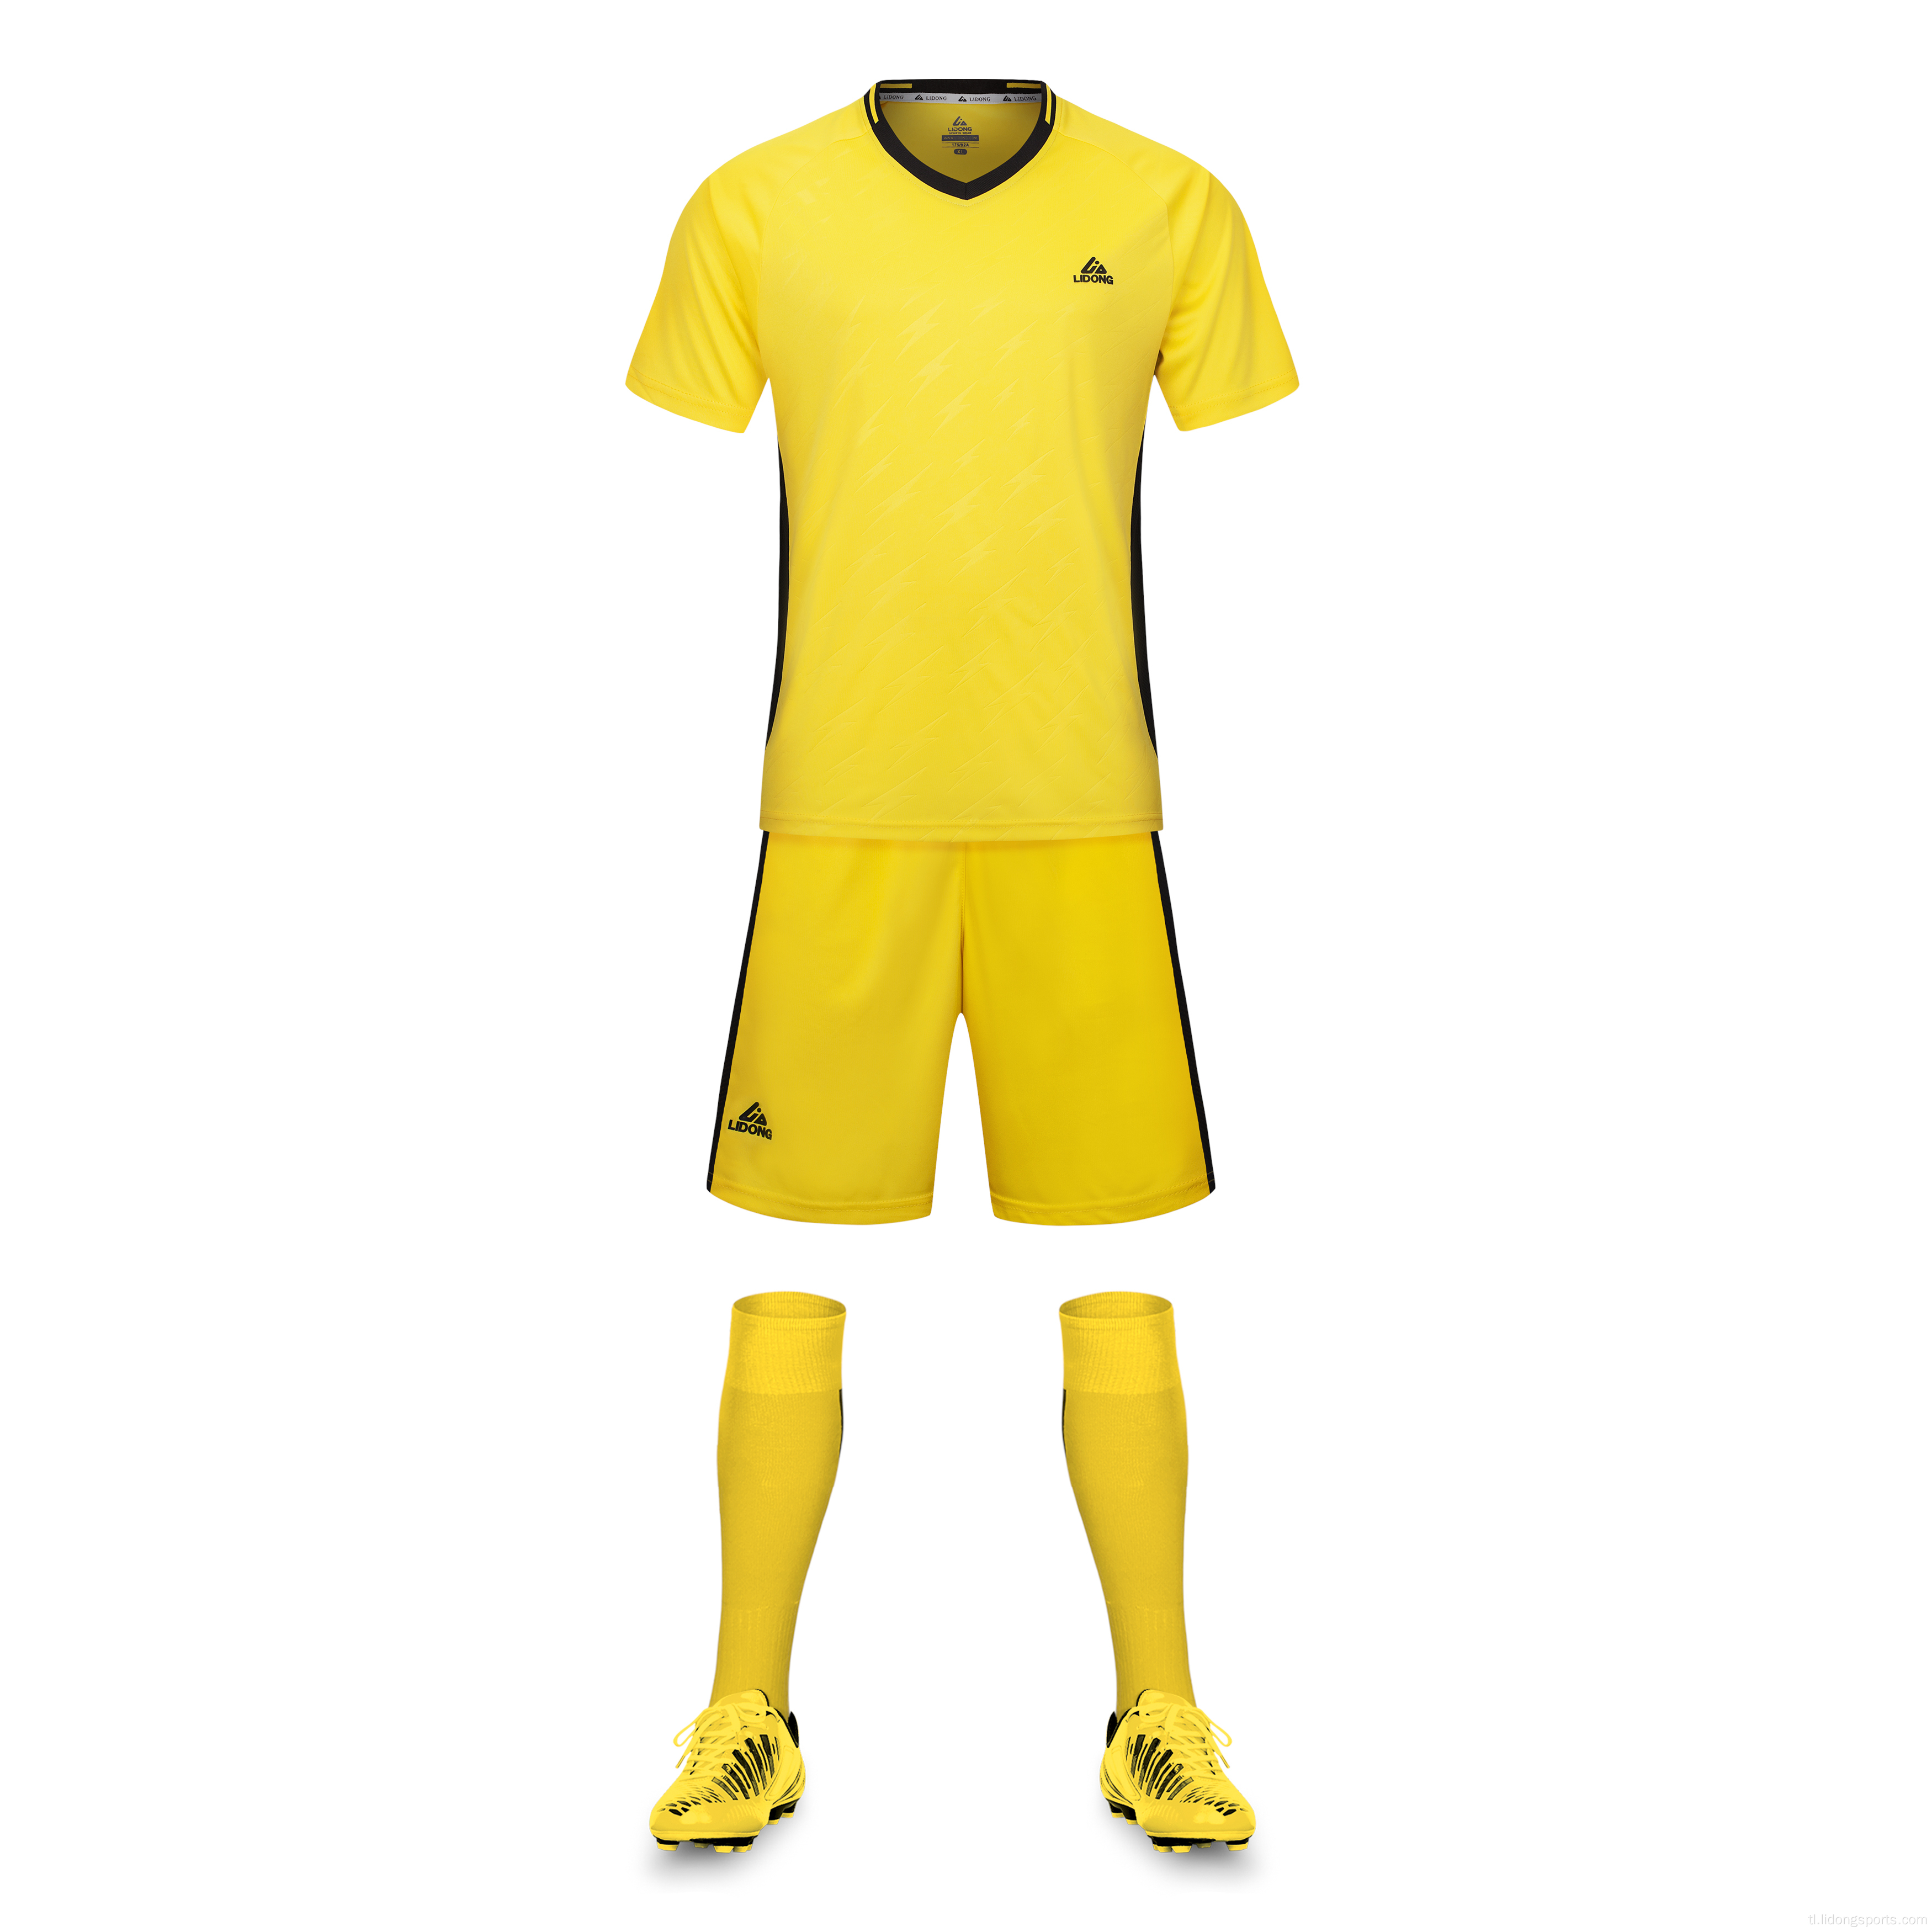 Uniform Soccer Football Shirt Maker Soccer Jersey Design.